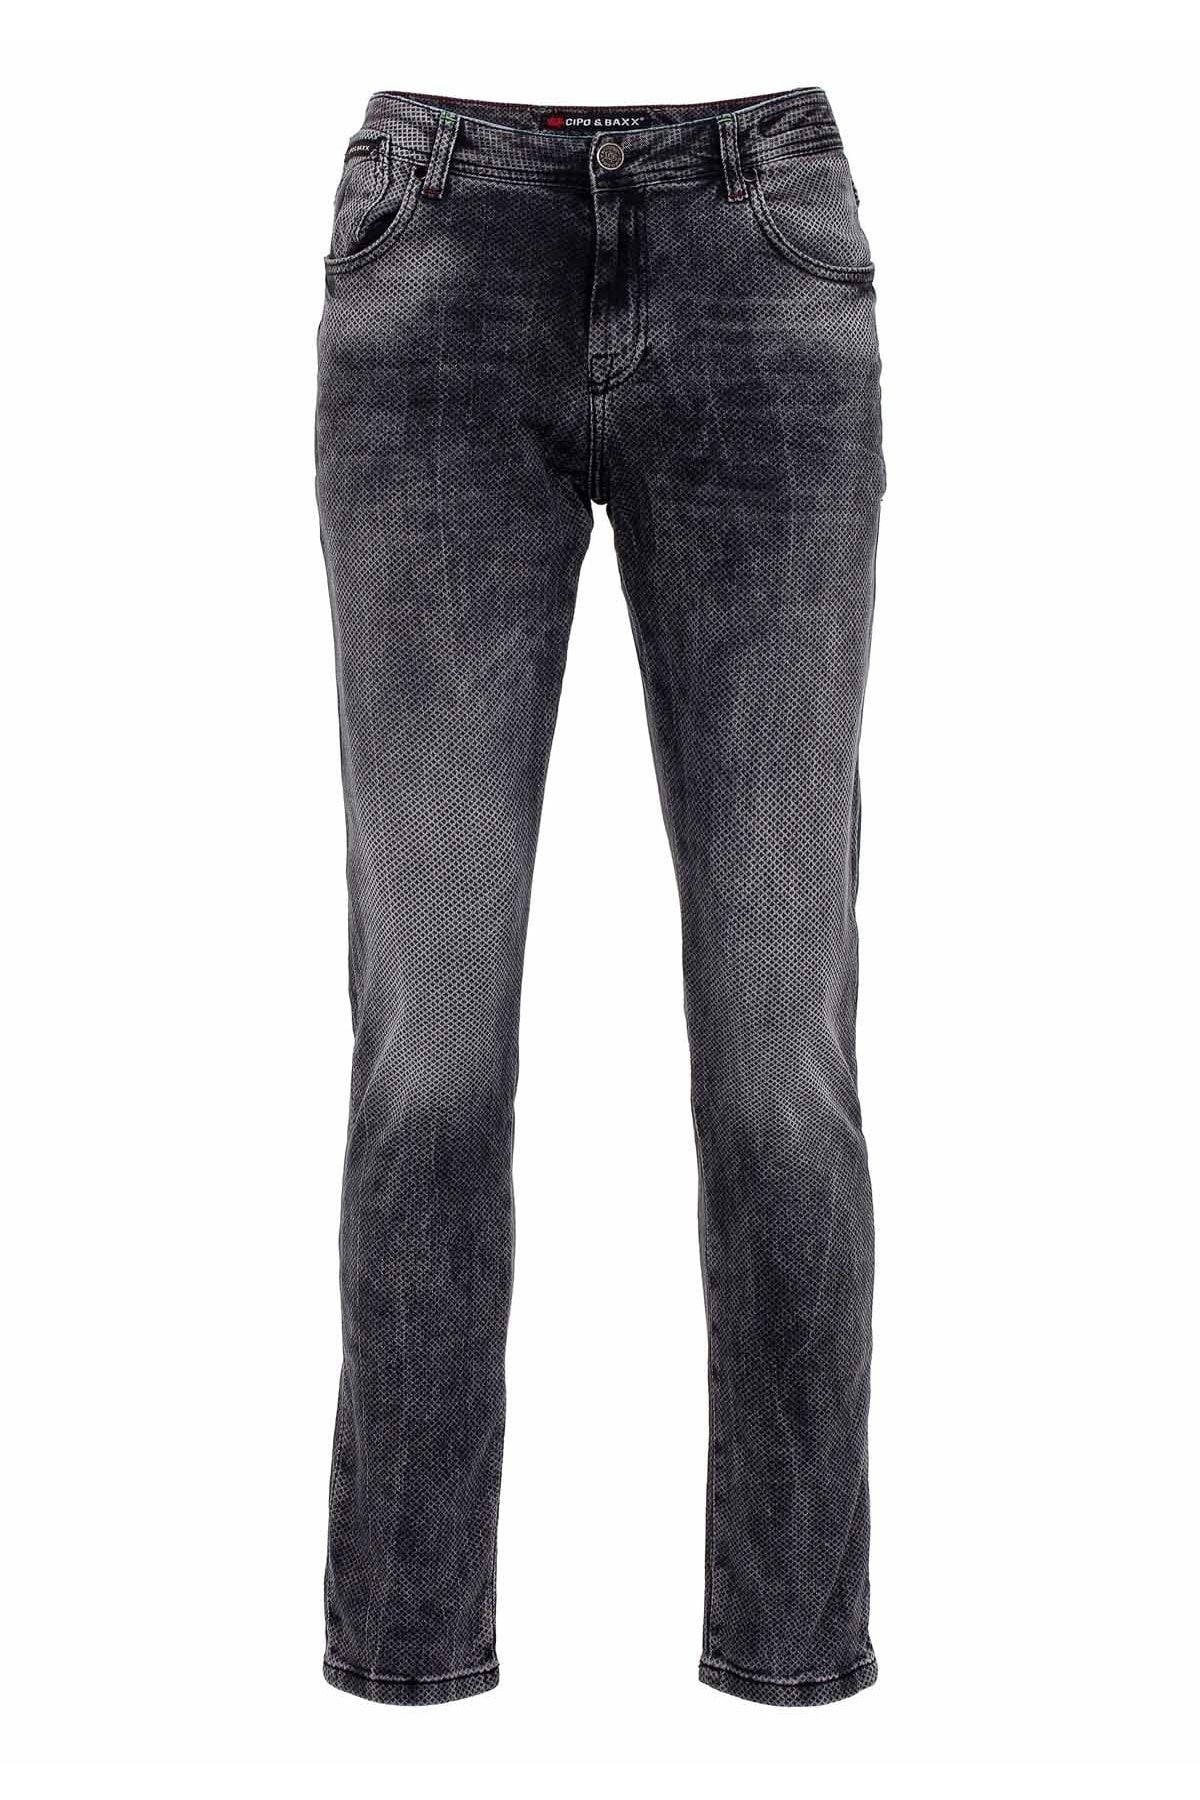 CD543 Men Slim-Fit-Jeans met een roosterpatroon in rechte pasvorm